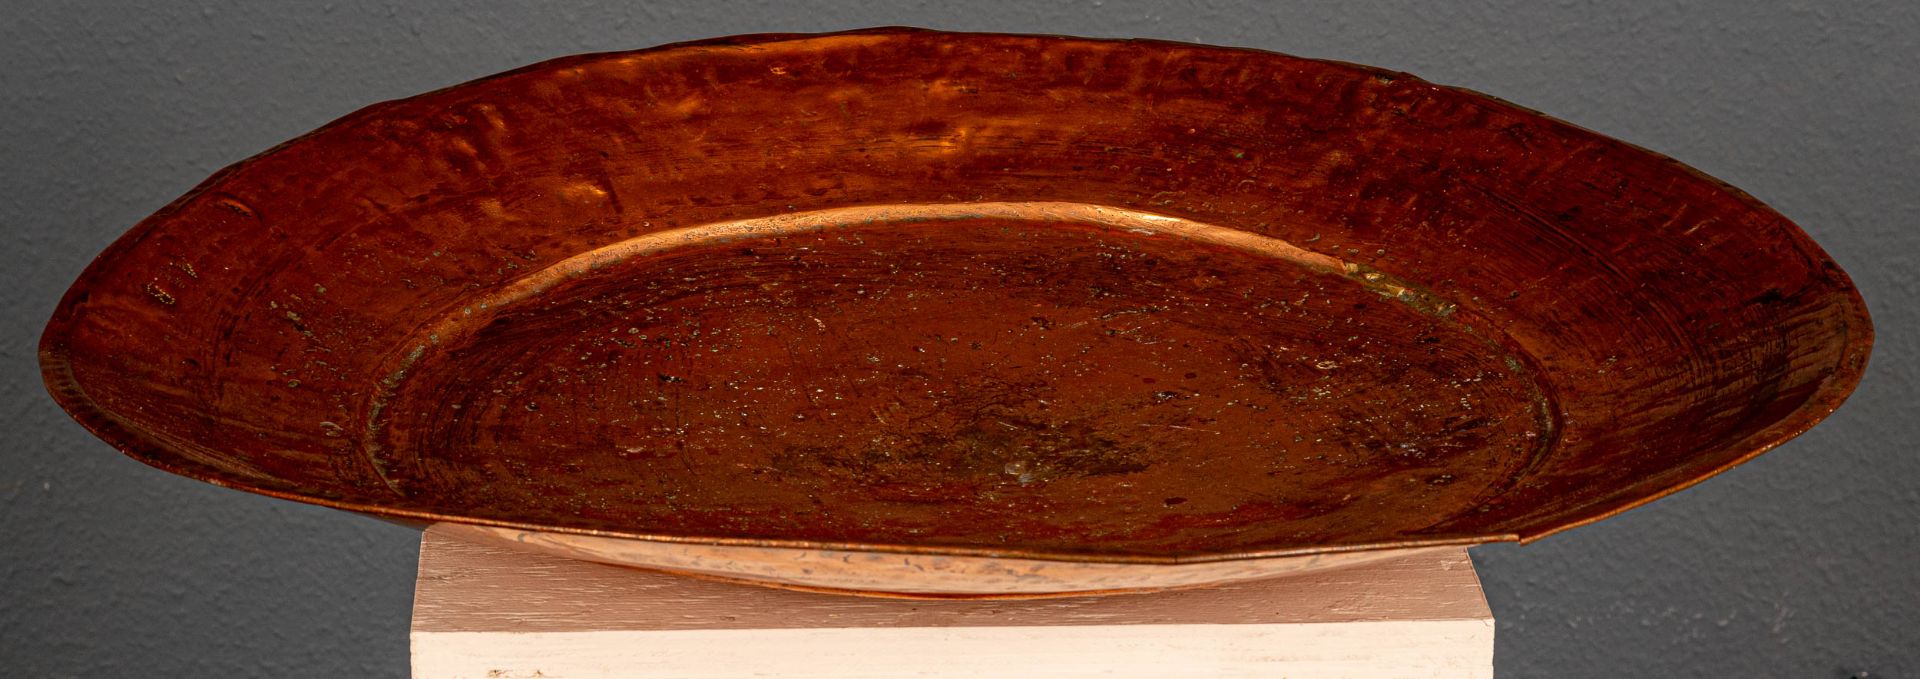 Sehr große Kupferplatte, bez.:"A 1 B", arabischer Raum, 20. Jhdt., Durchmesser ca. 71 cm. - Bild 6 aus 7